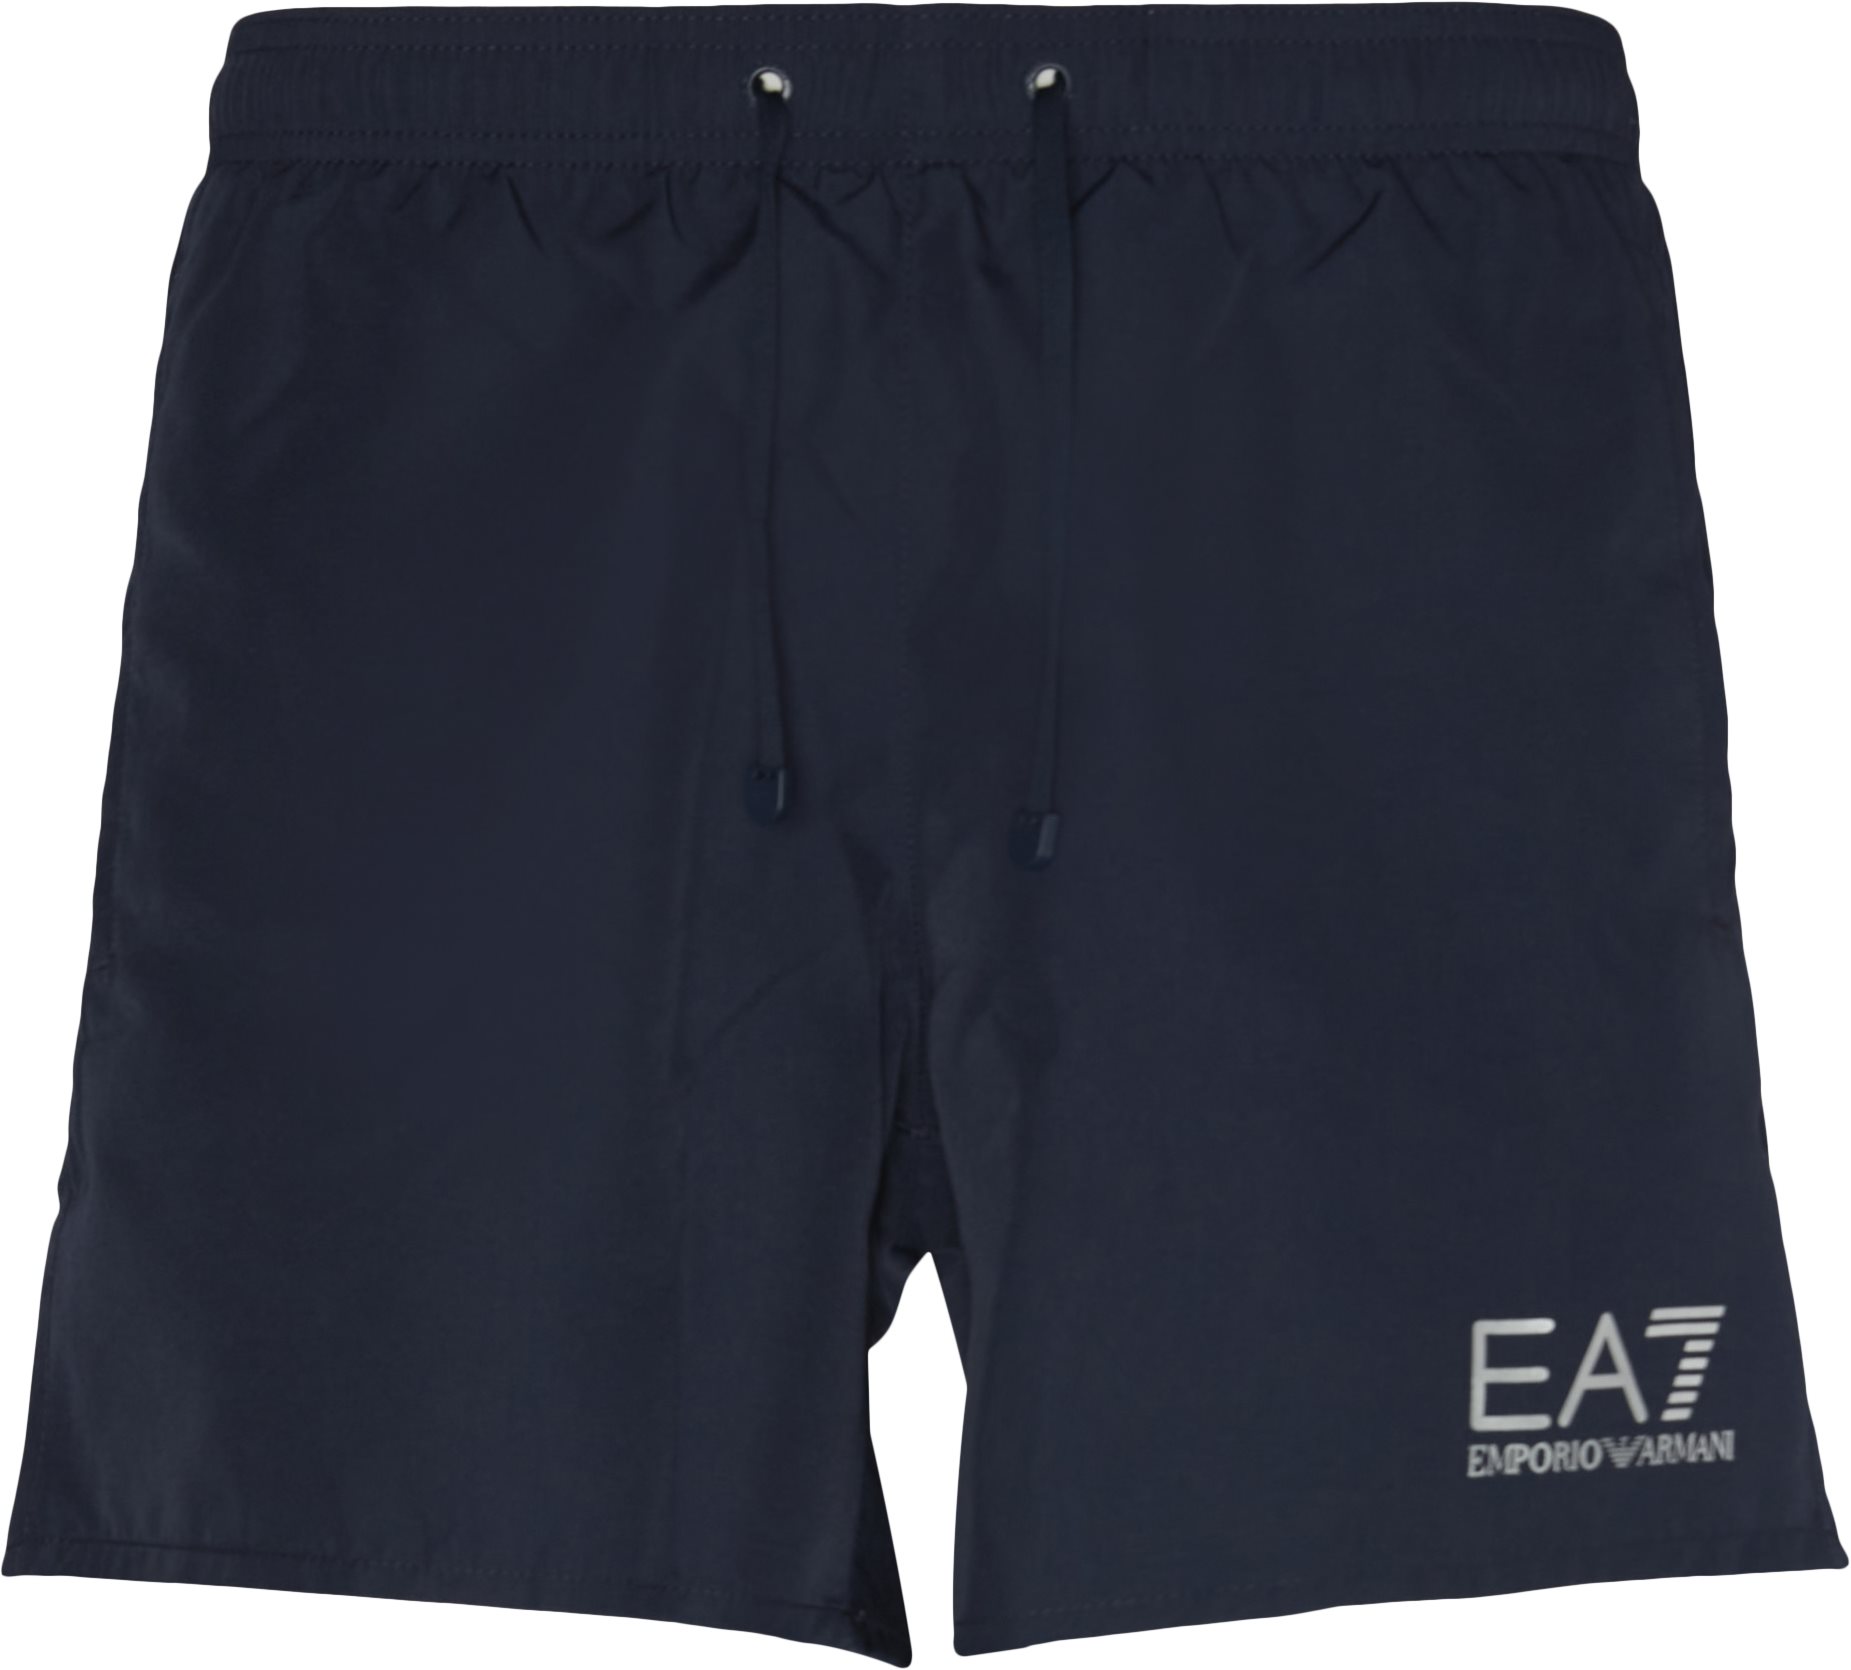 CC721 902000 Badeshorts - Shorts - Regular fit - Blå